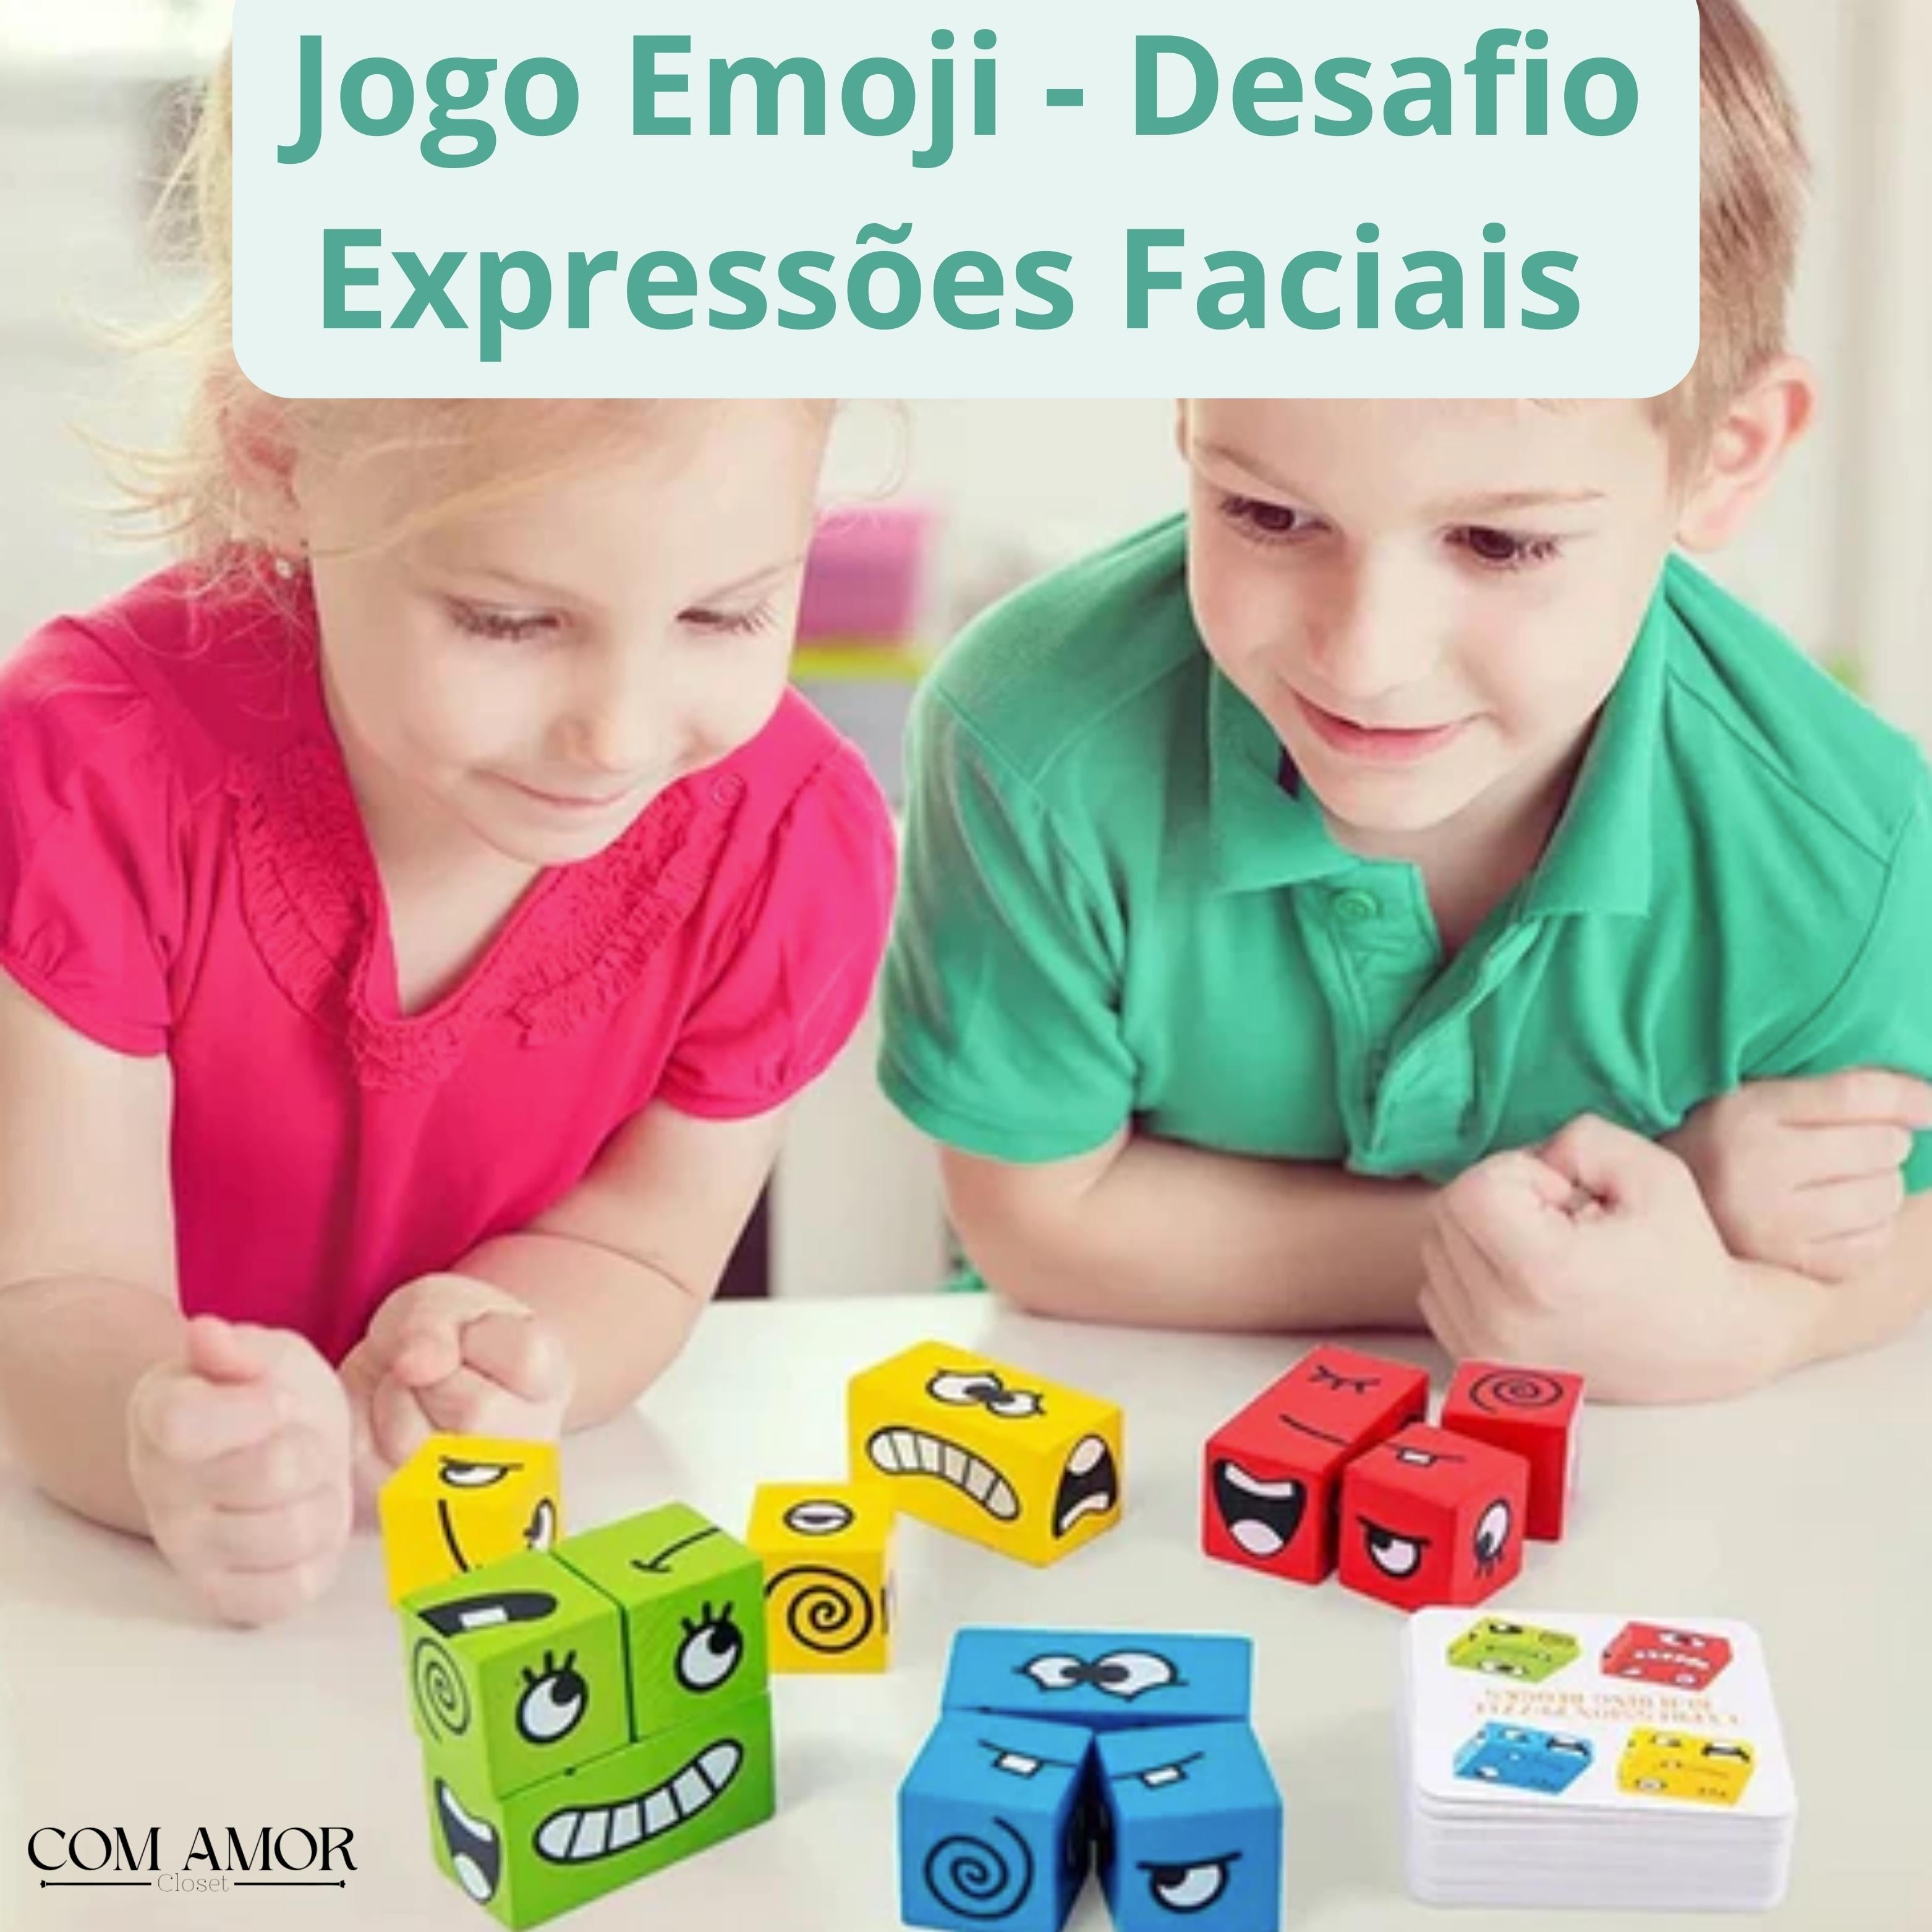 Jogo Emoji - Desafio Expressões Faciais - Divertido e Cativante